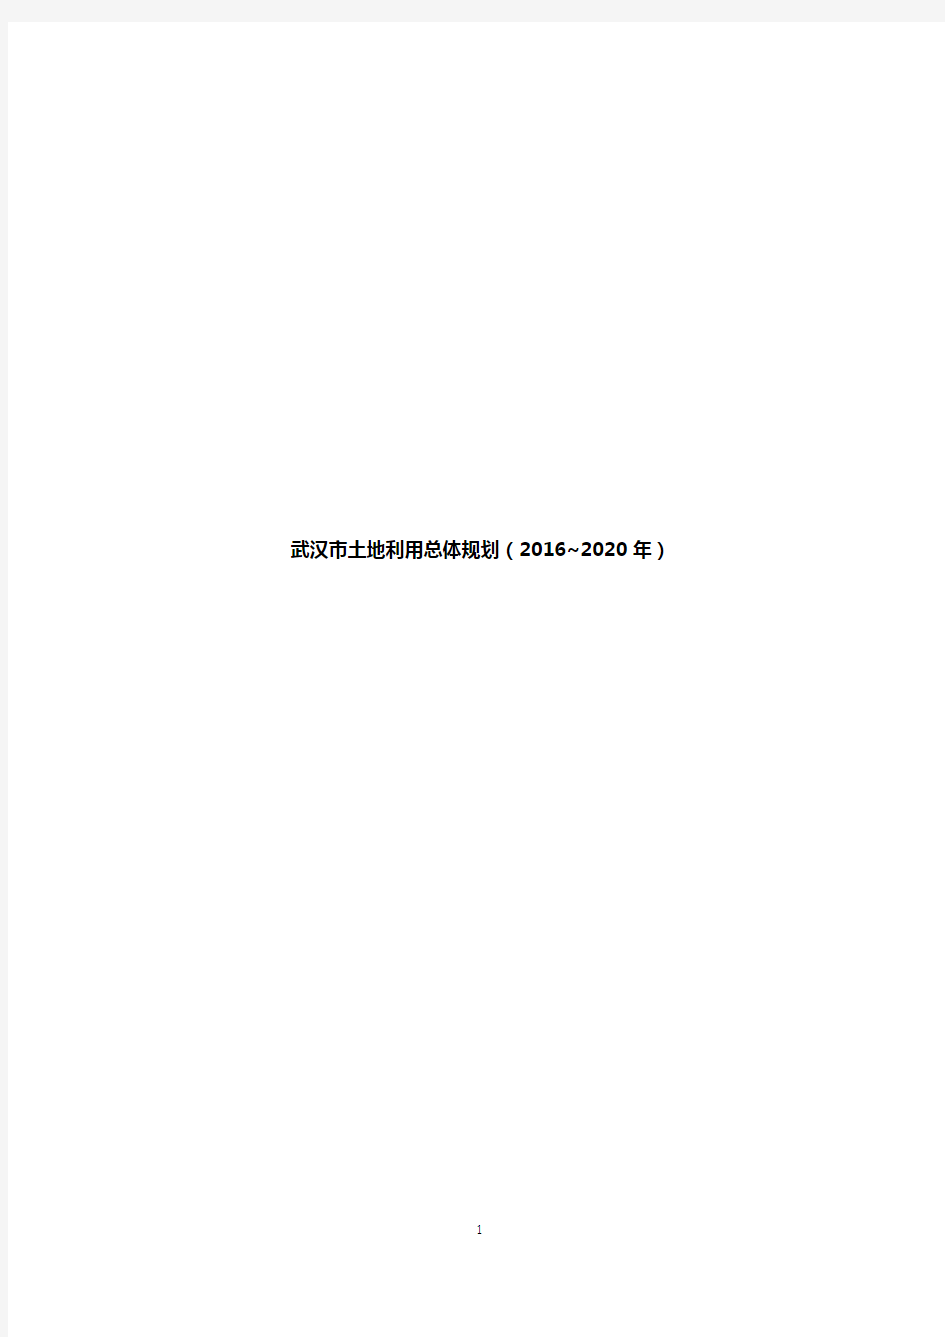 湖北武汉市土地利用总体规划项目计划书(2016-2020年)